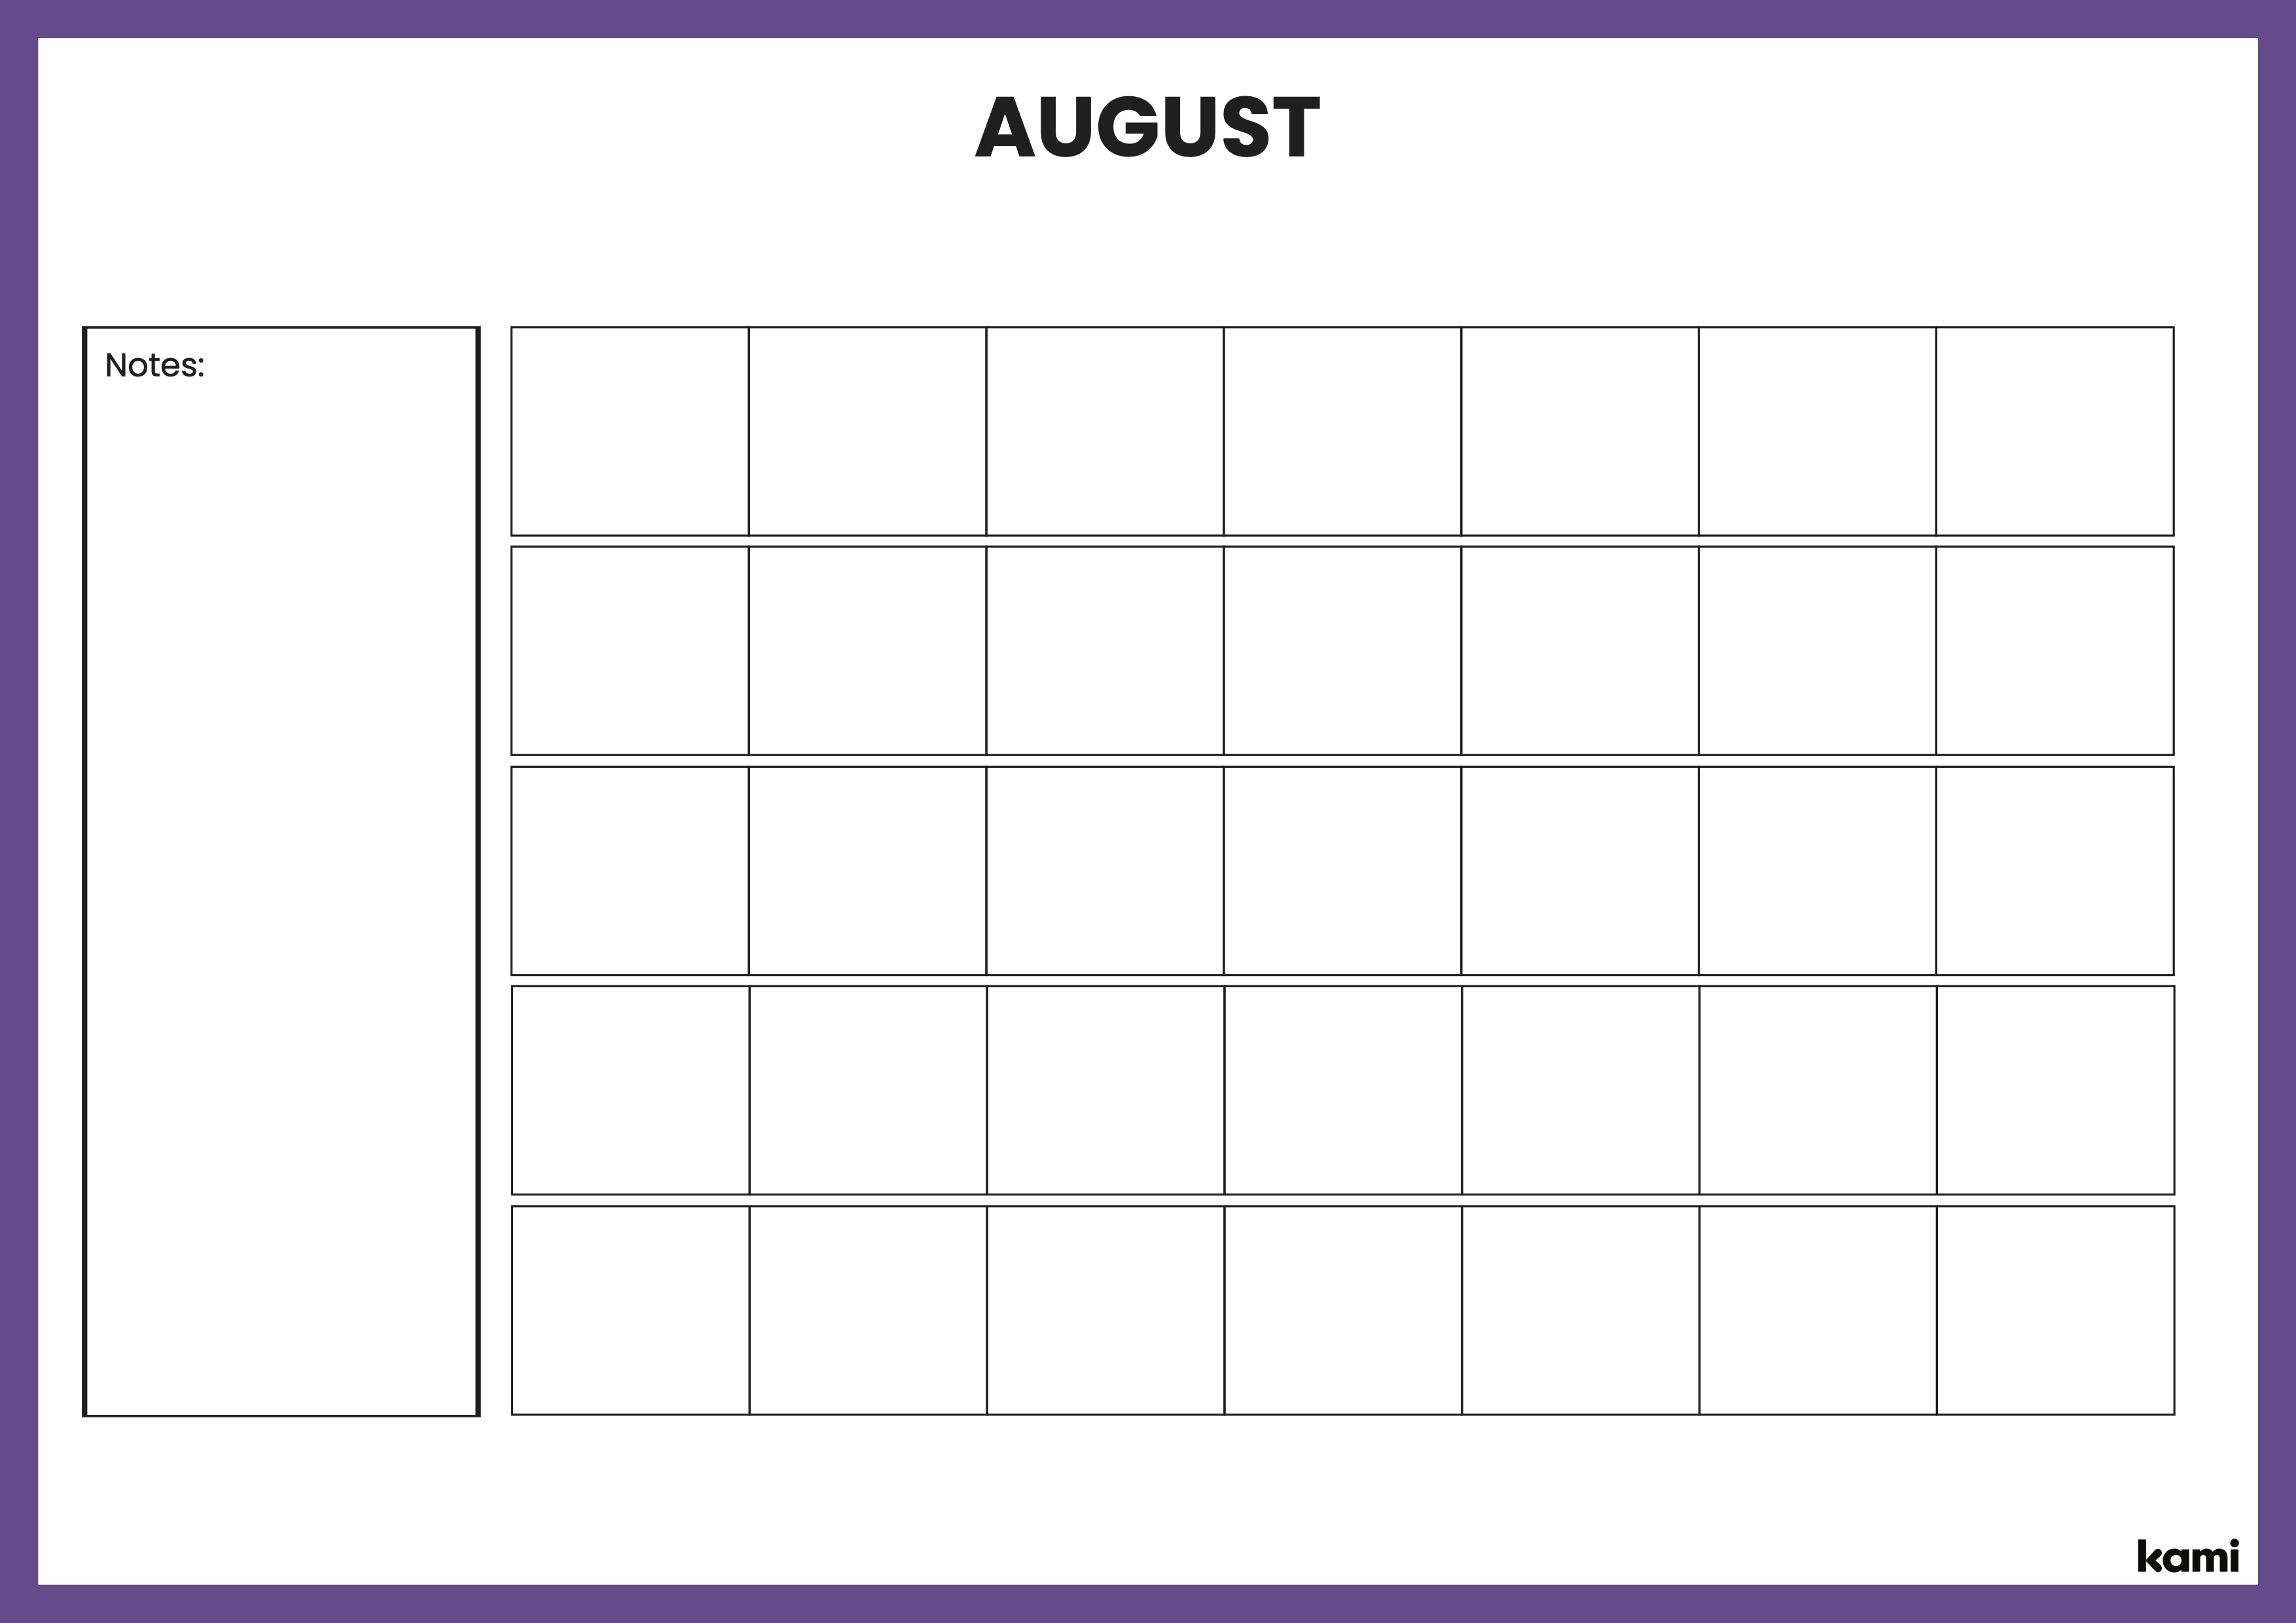 A classroom calendar for teachers with a purple theme